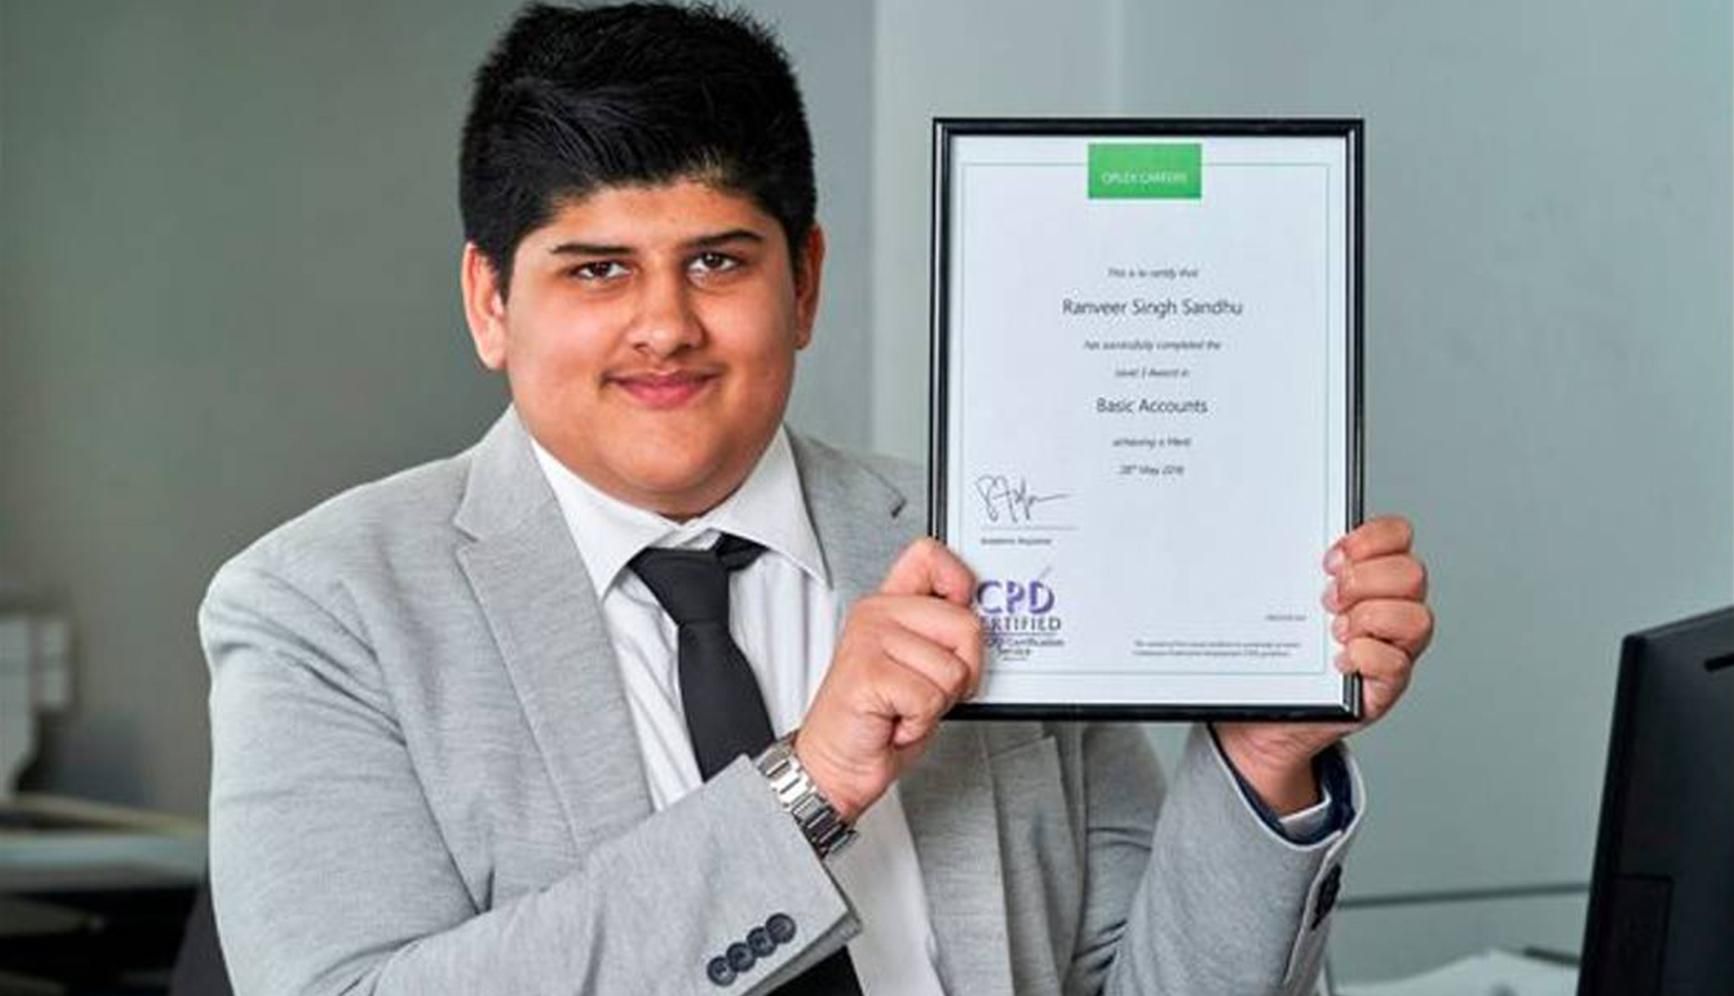 Як 15-річний хлопець став наймолодшим бухгалтером Великої Британії та відкрив свій бізнес